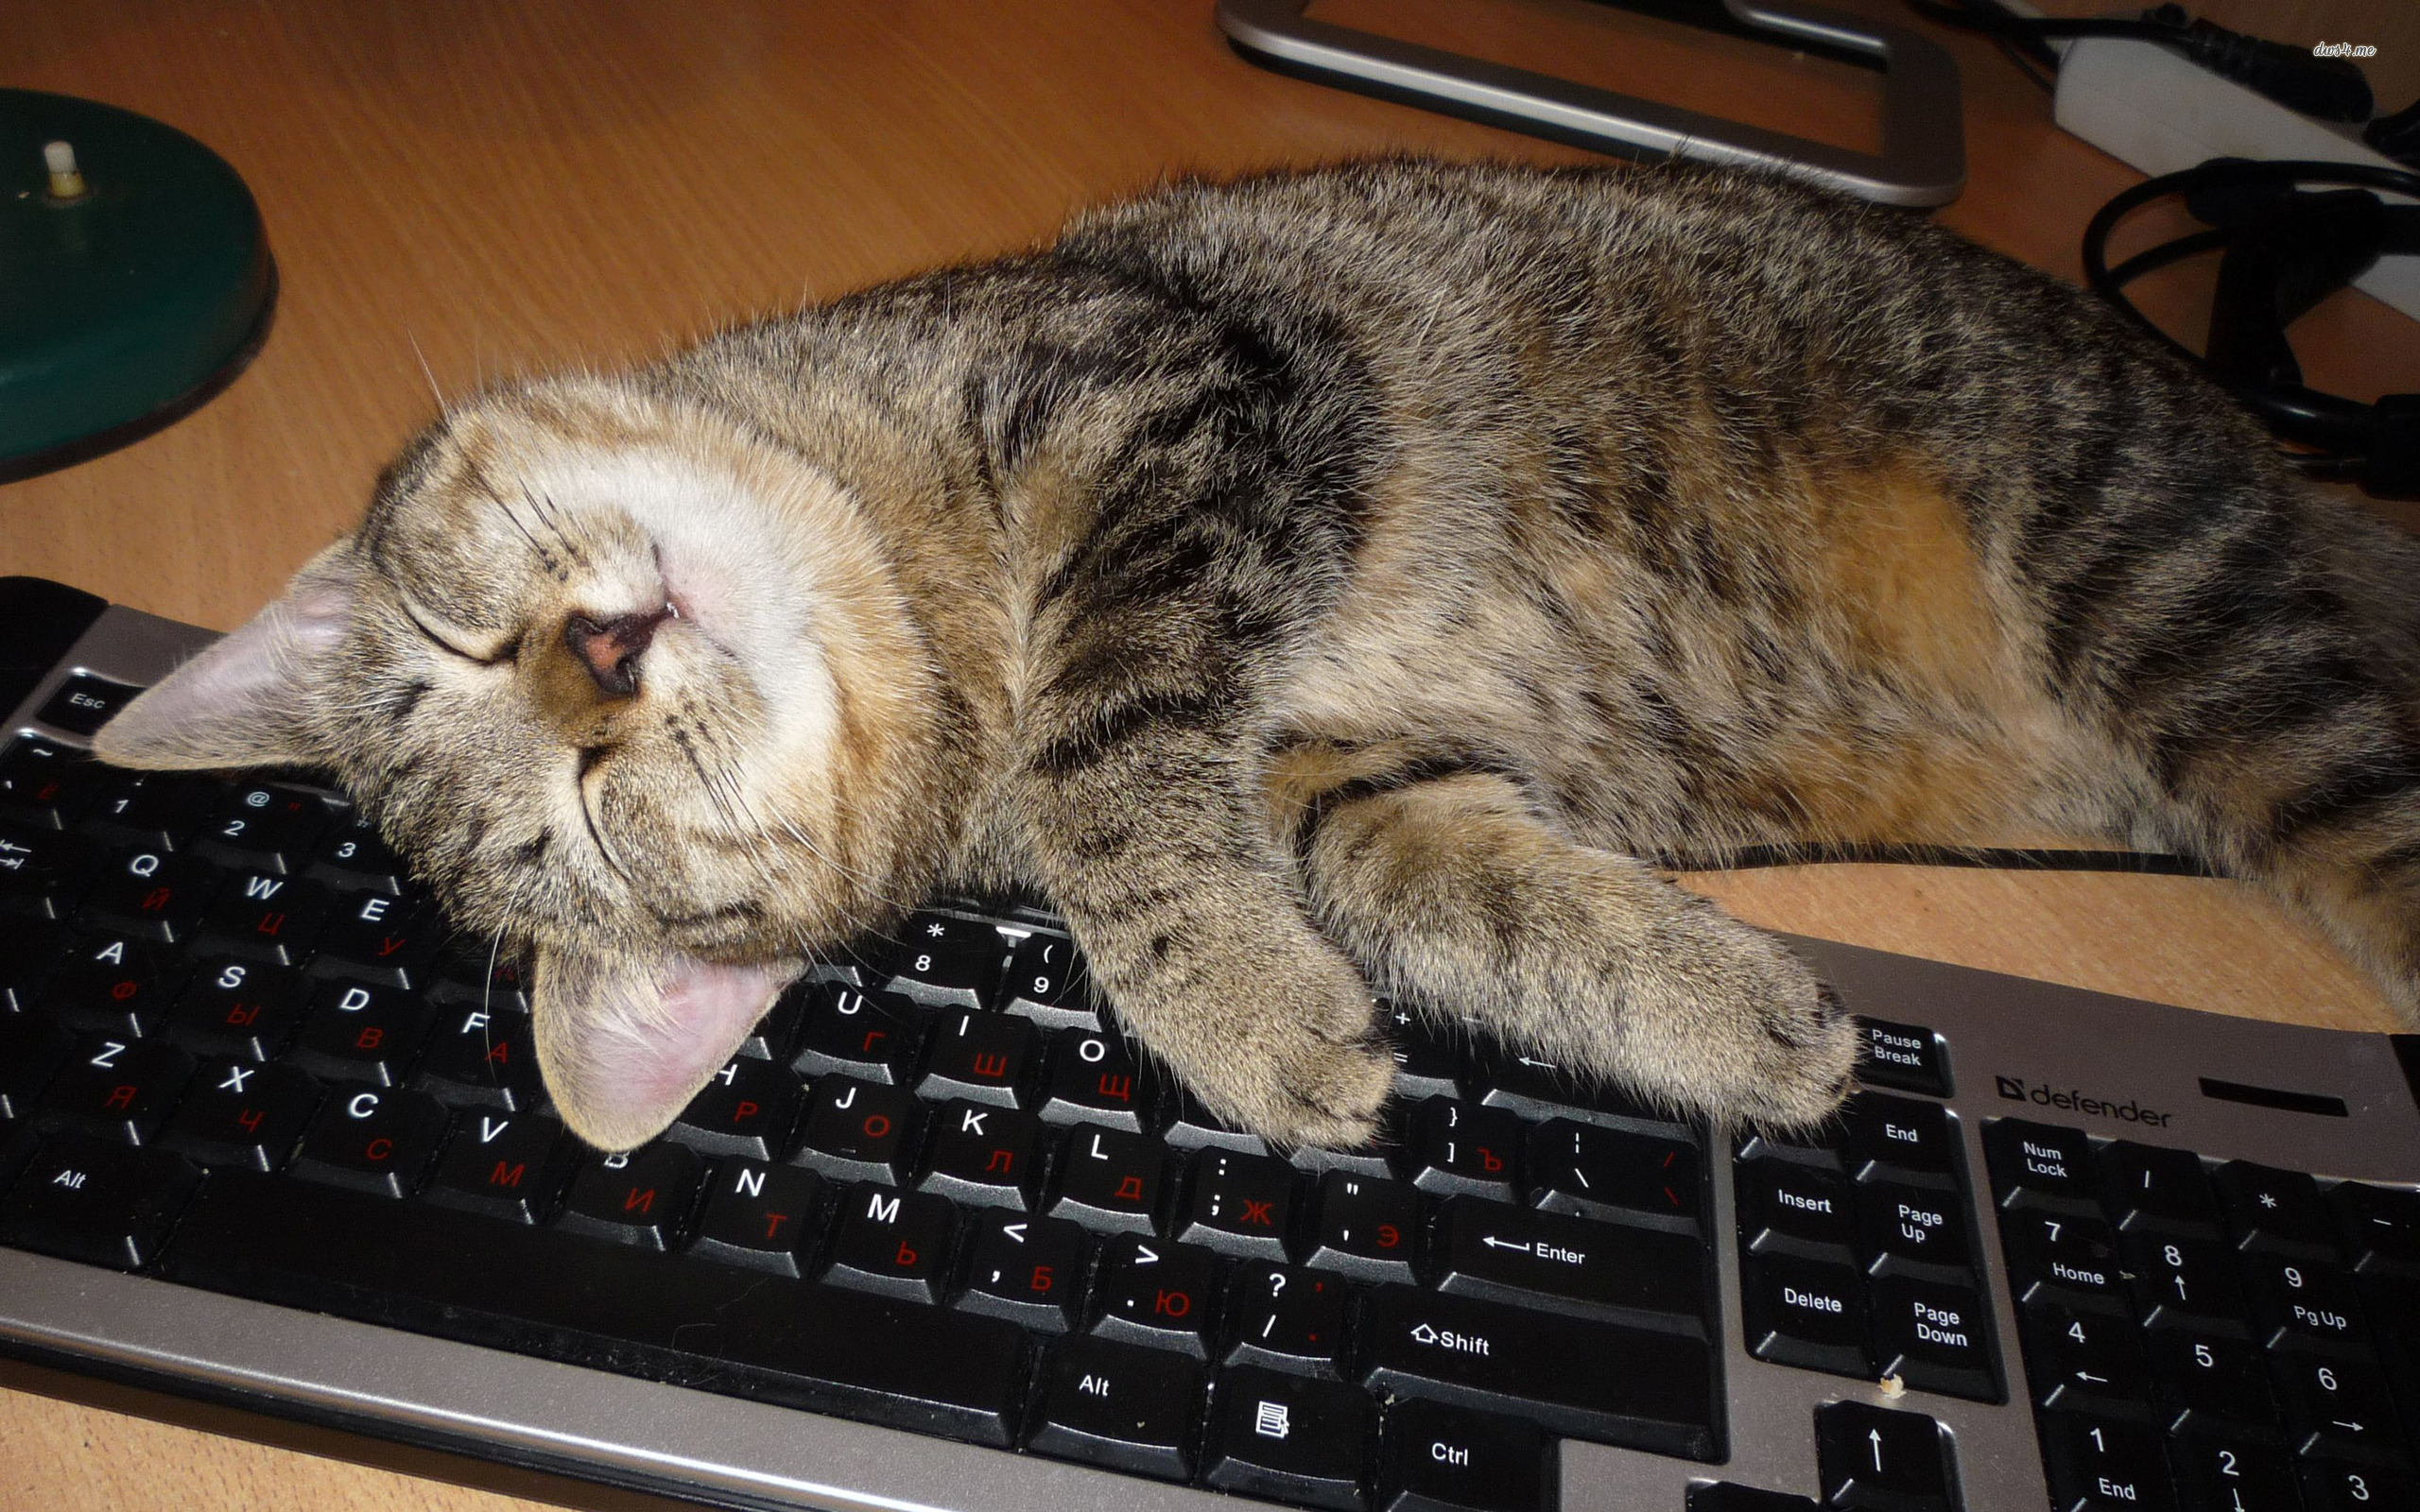 fond d'écran du clavier,chat,chats de petite à moyenne taille,félidés,chat tigré,shorthair européen